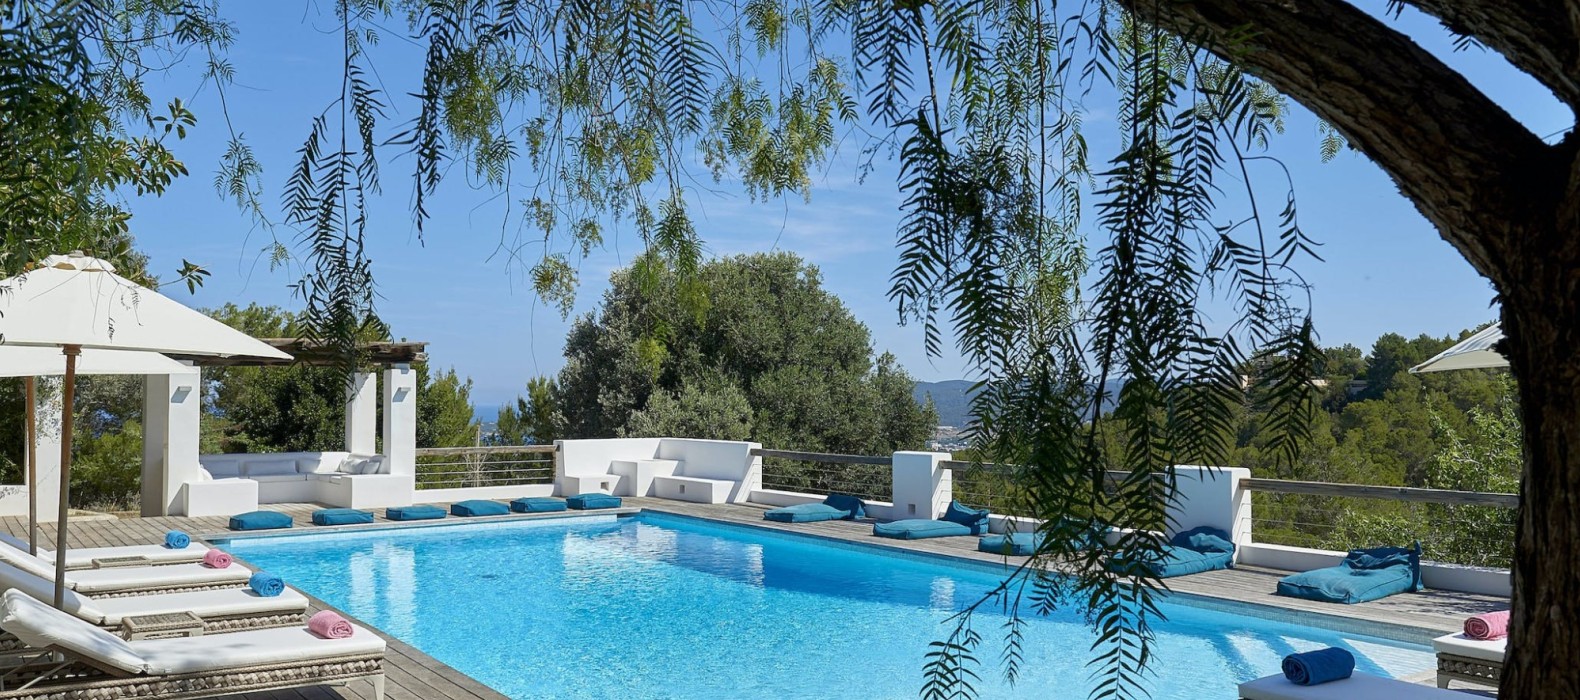 Exterior pool area view of Finca Las Velas in Ibiza